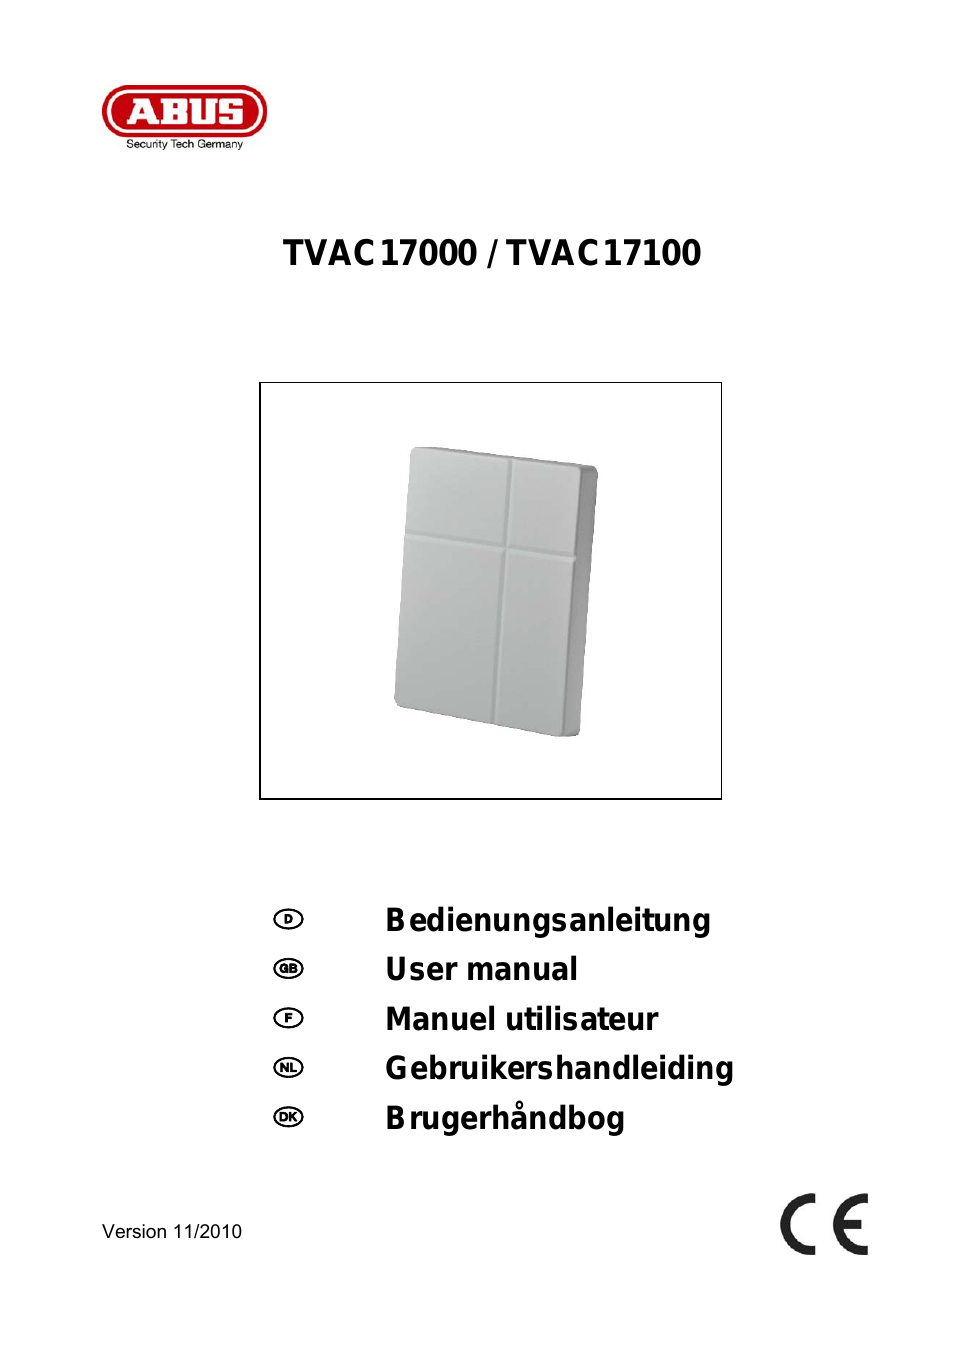 TVAC17100